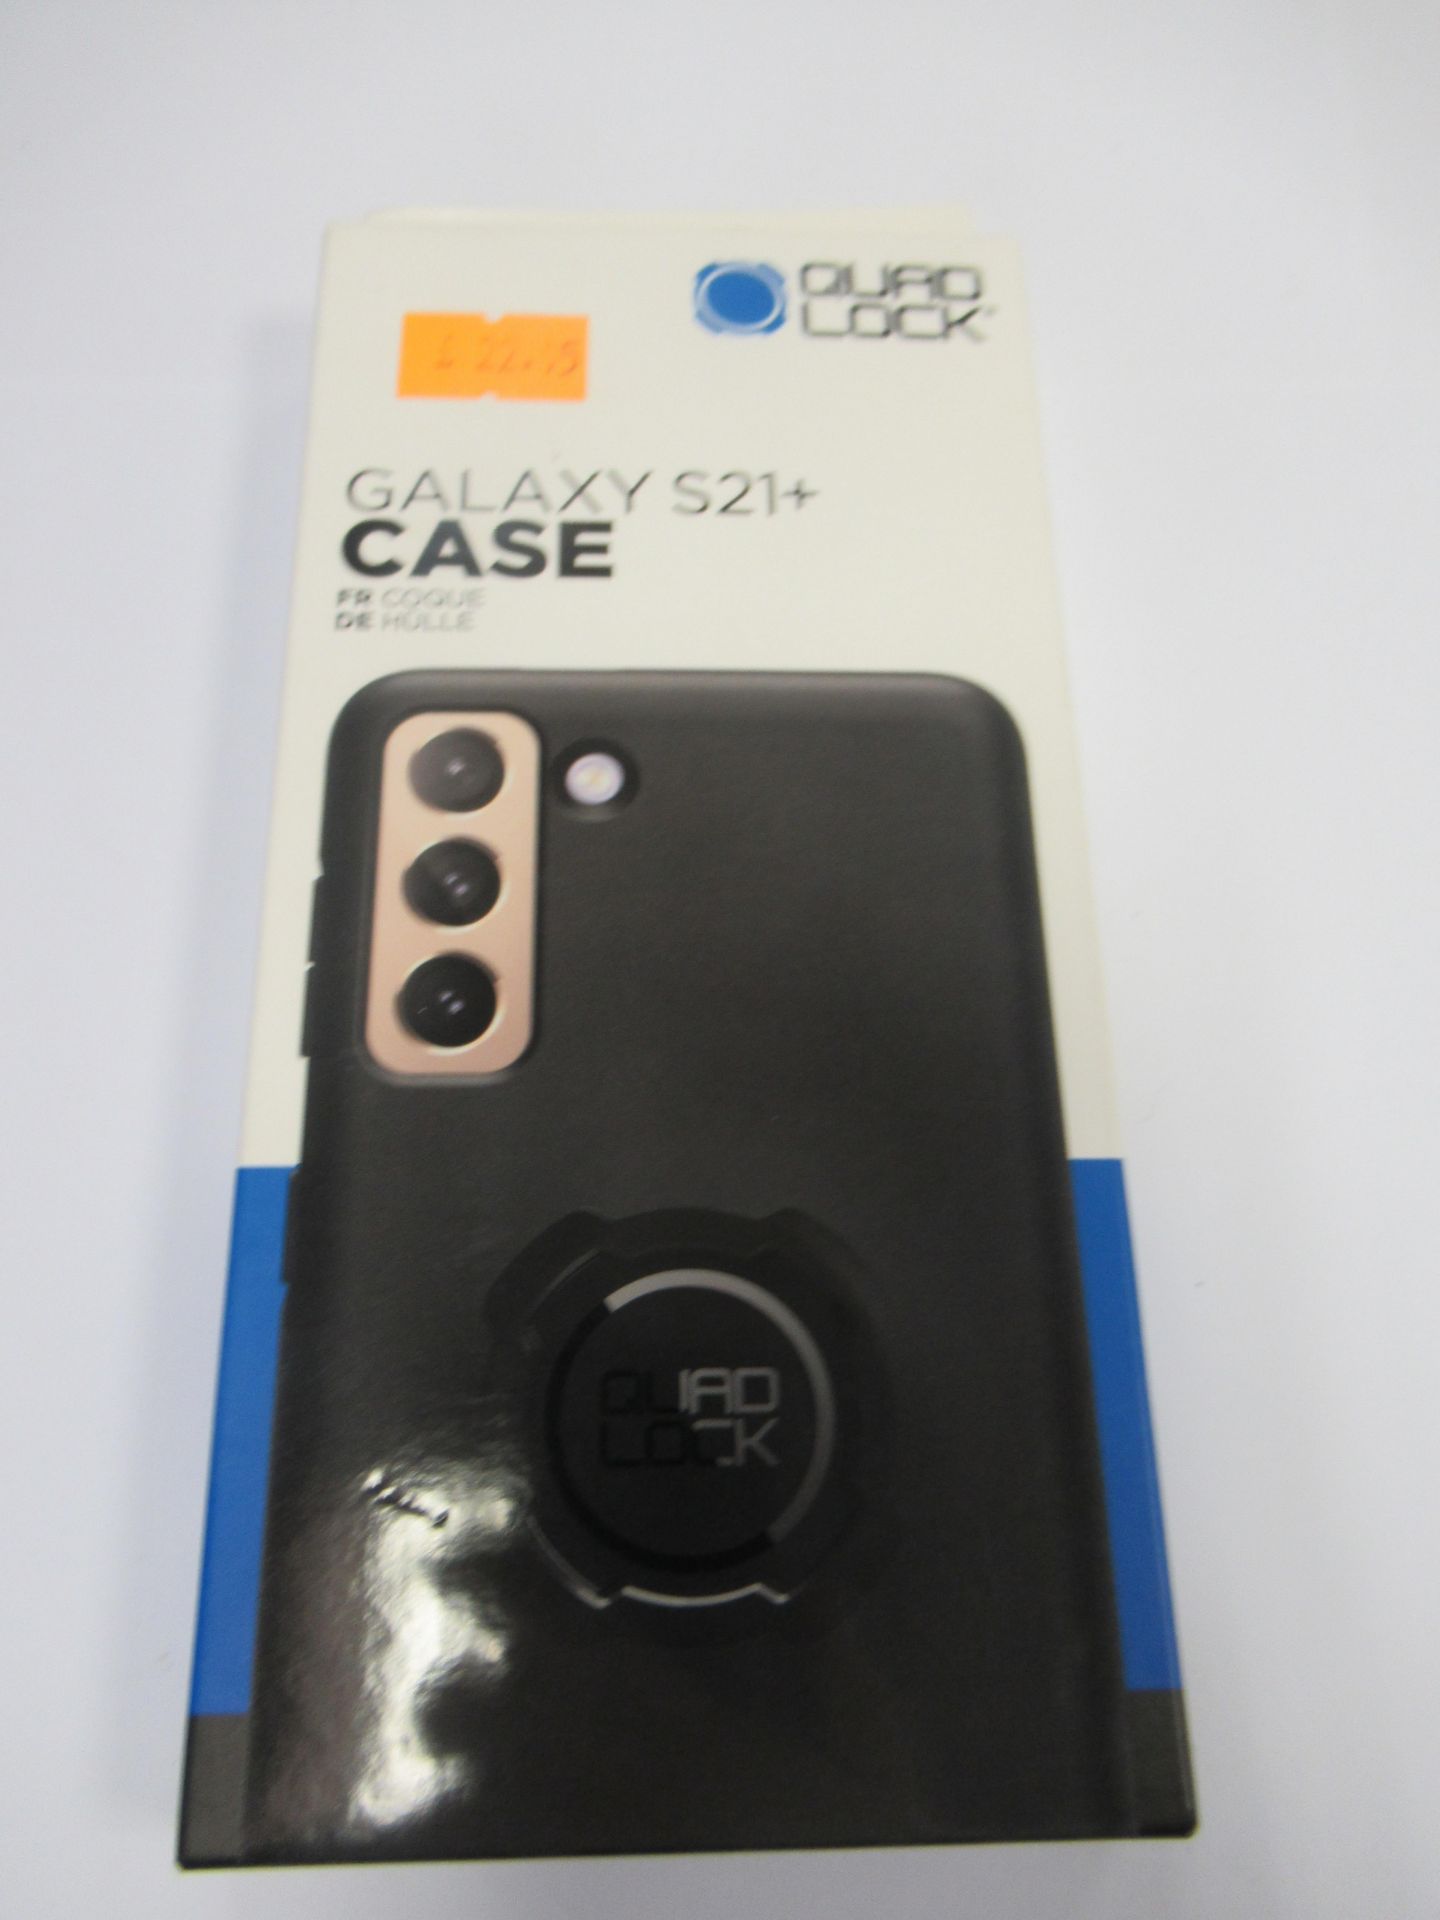 Quad Lock Black Phone Cases - Image 6 of 23